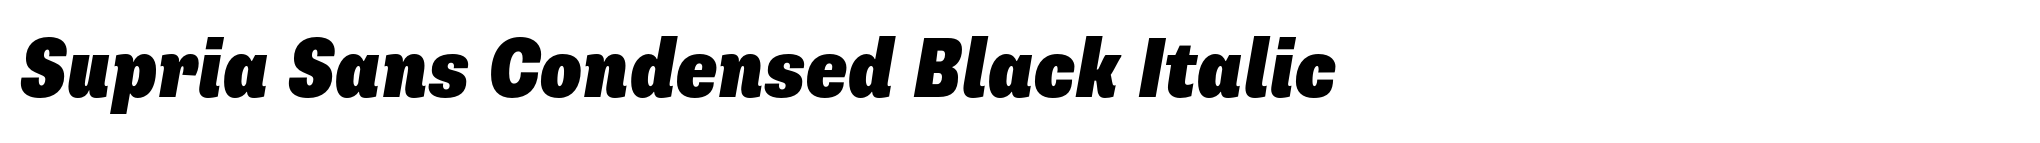 Supria Sans Condensed Black Italic image